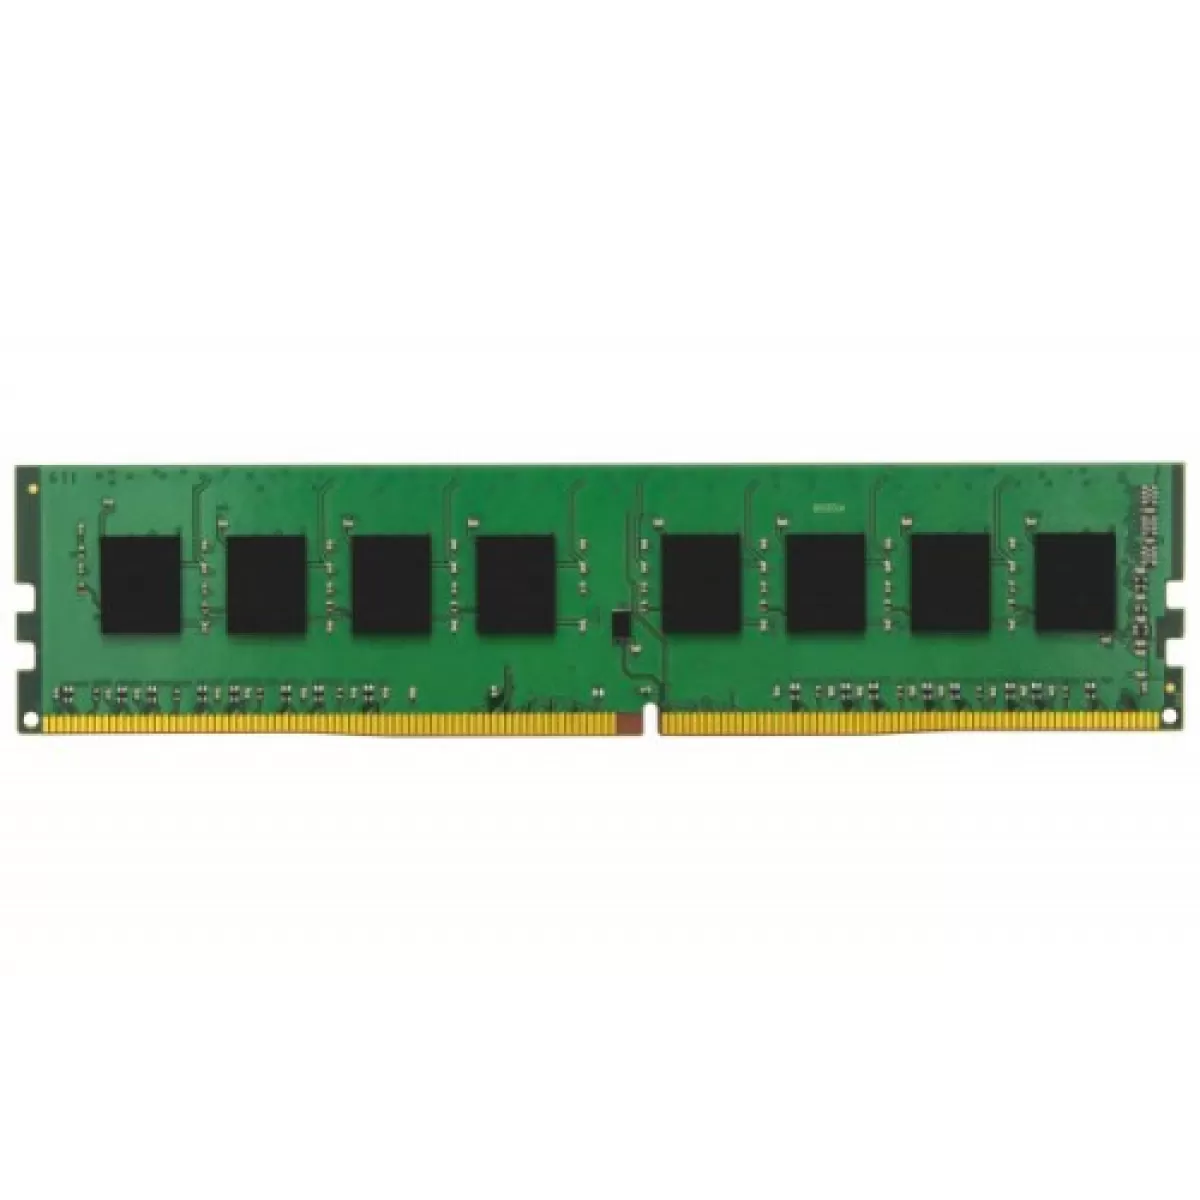 Памет 16G DDR4 2133 KINGSTON